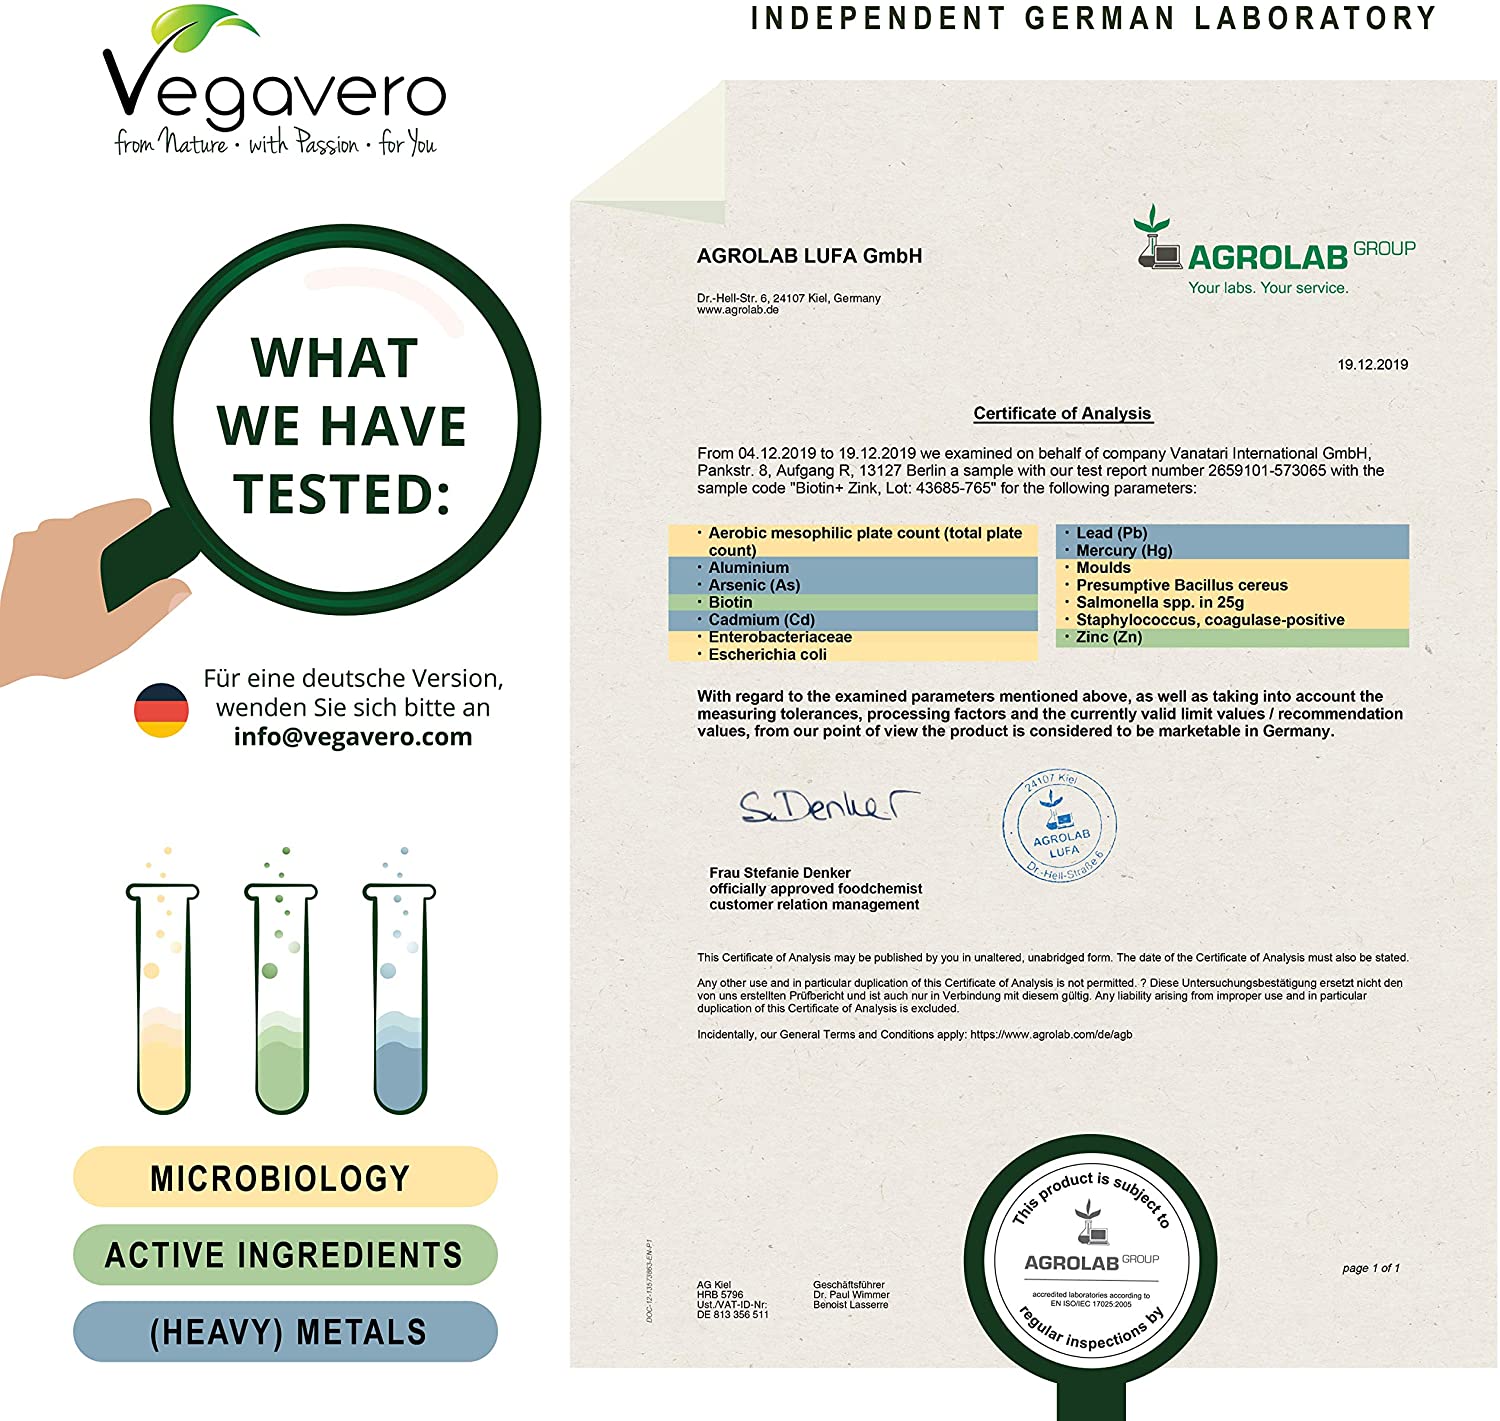  Biotina Vegavero® | 10000 mcg con Zinc | Vegana & La Única Sin Aditivos | Caída Pelo + Crecimiento + Vitaminas Para el Cabello | Piel + Uñas | 180 Cápsulas 